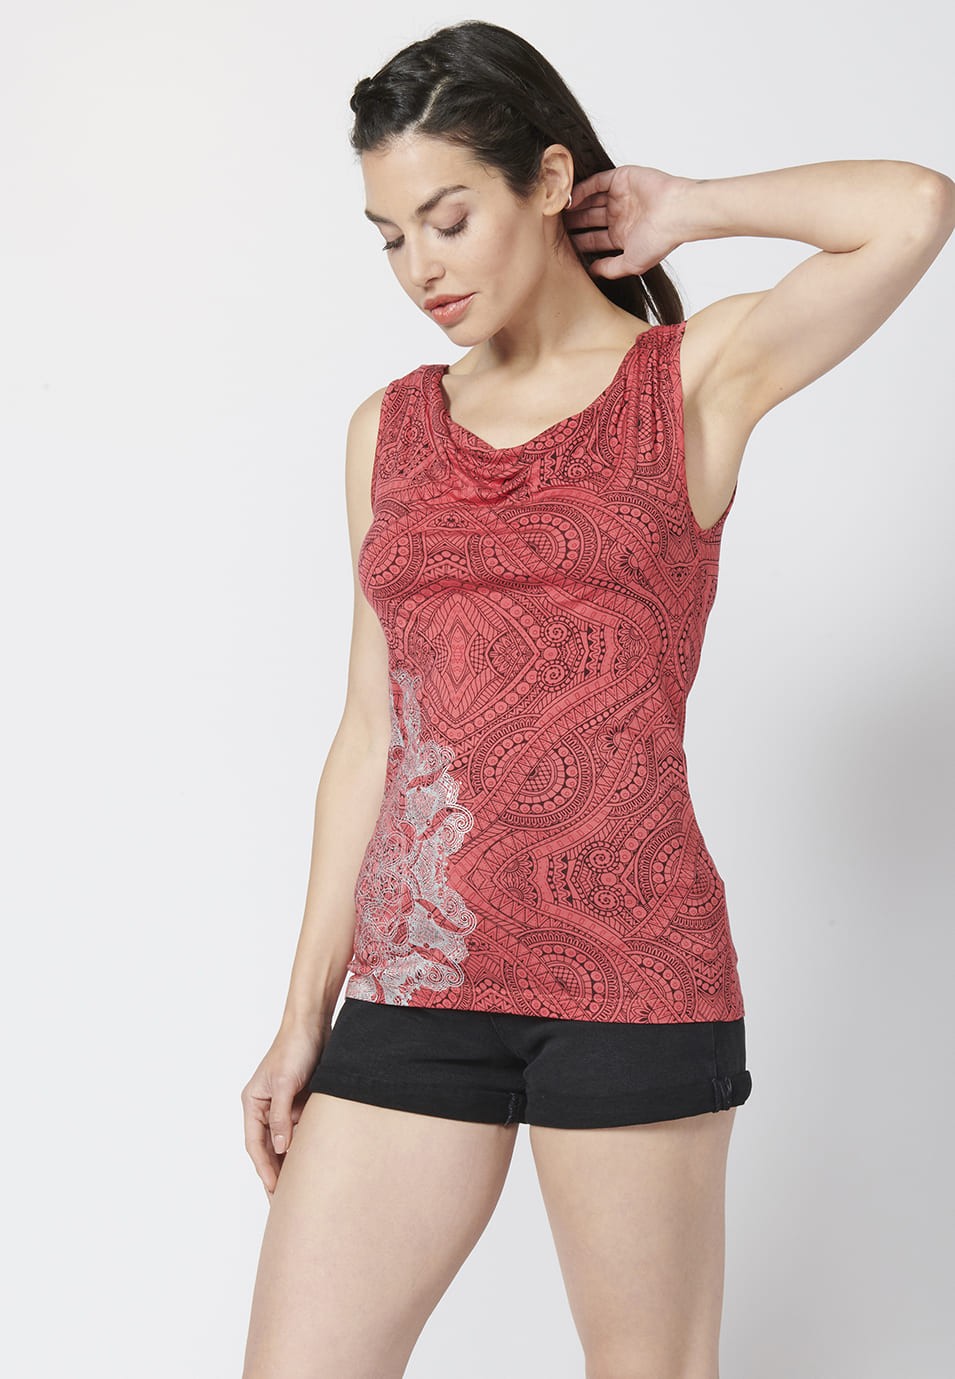 Camiseta Top tirantes con Escote Redondo Holgado y Estampado Étnico para Mujer color Coral 3